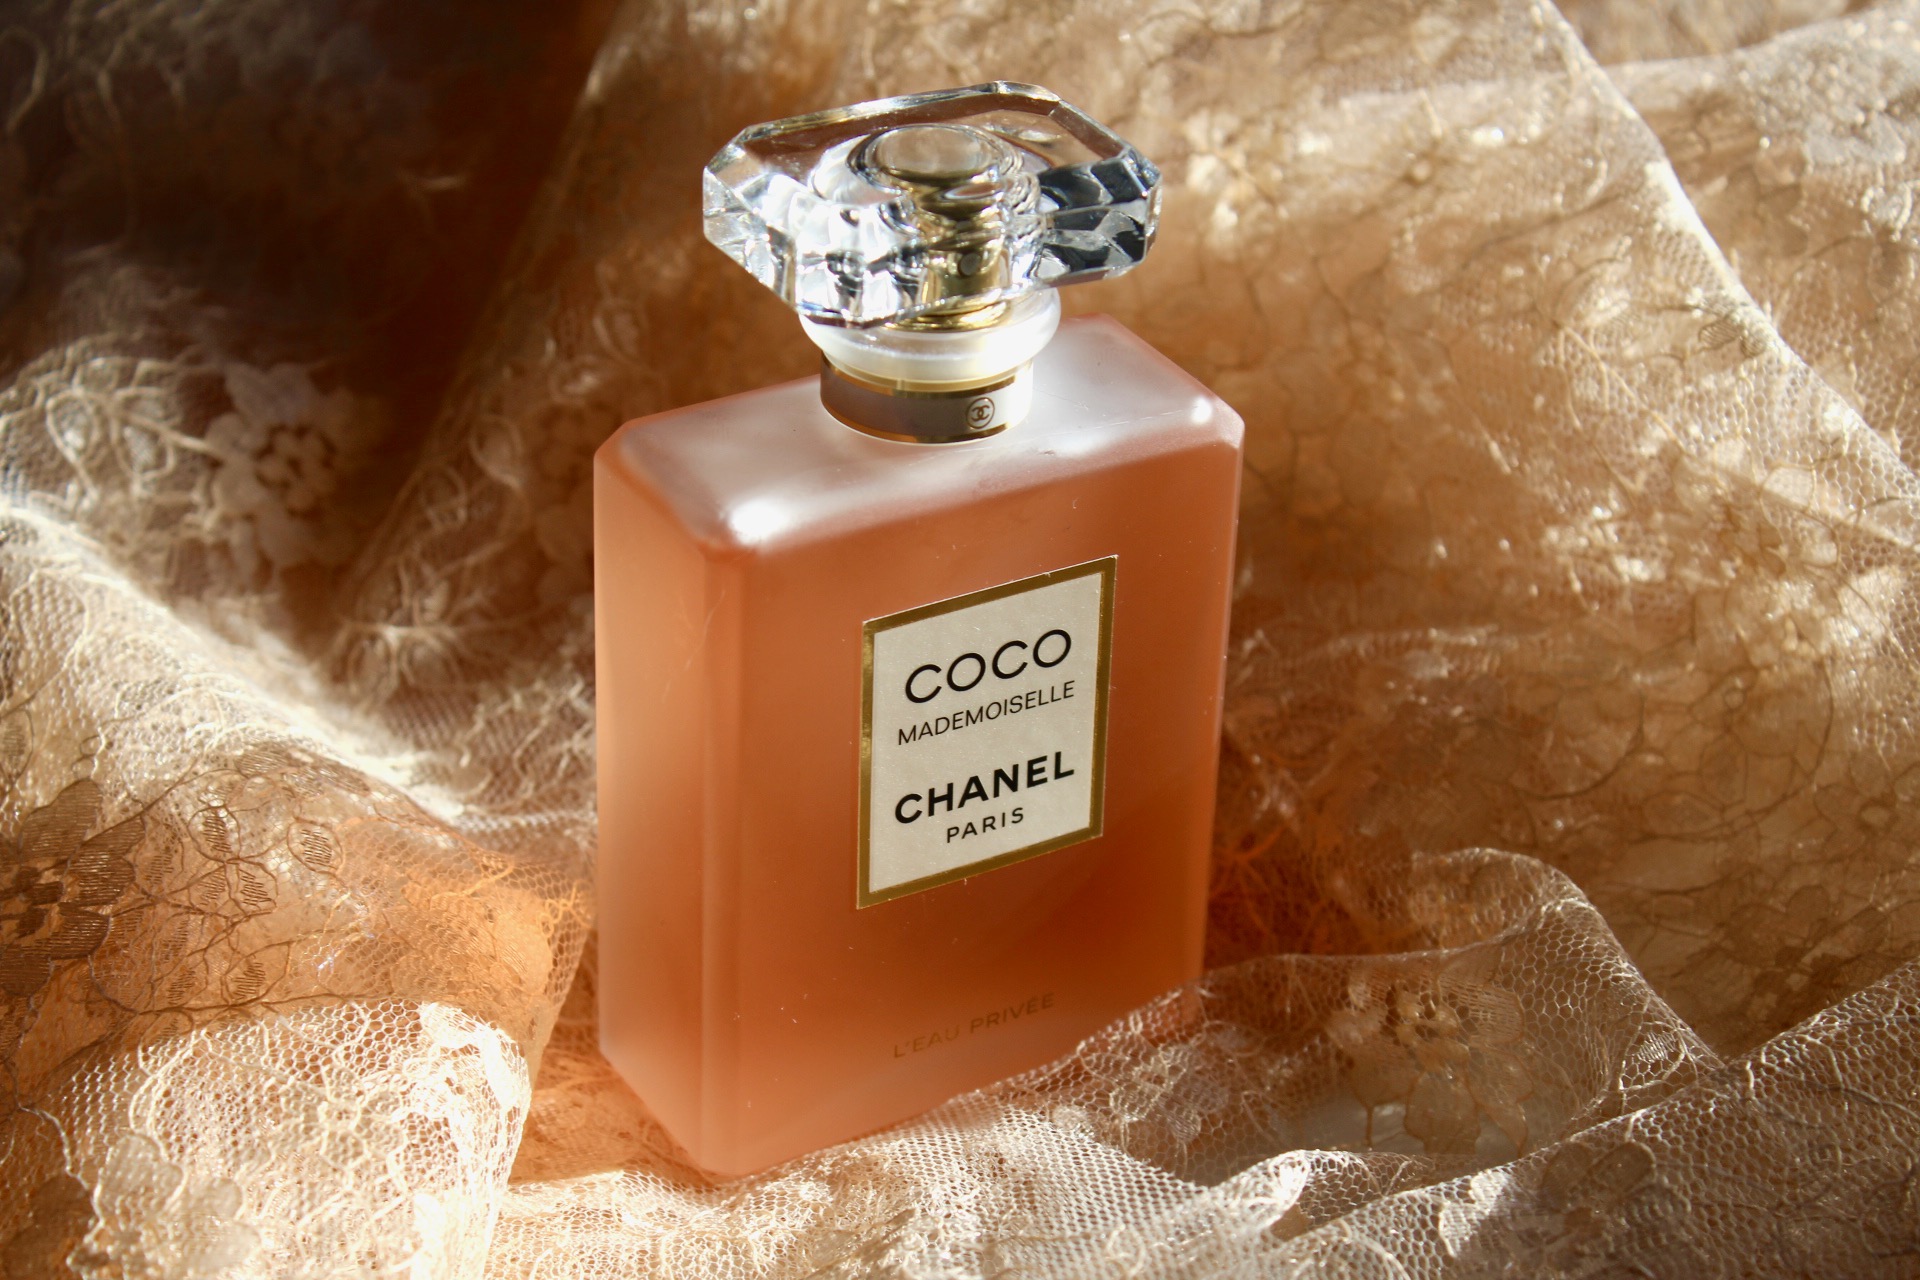 perfumes like coco chanel